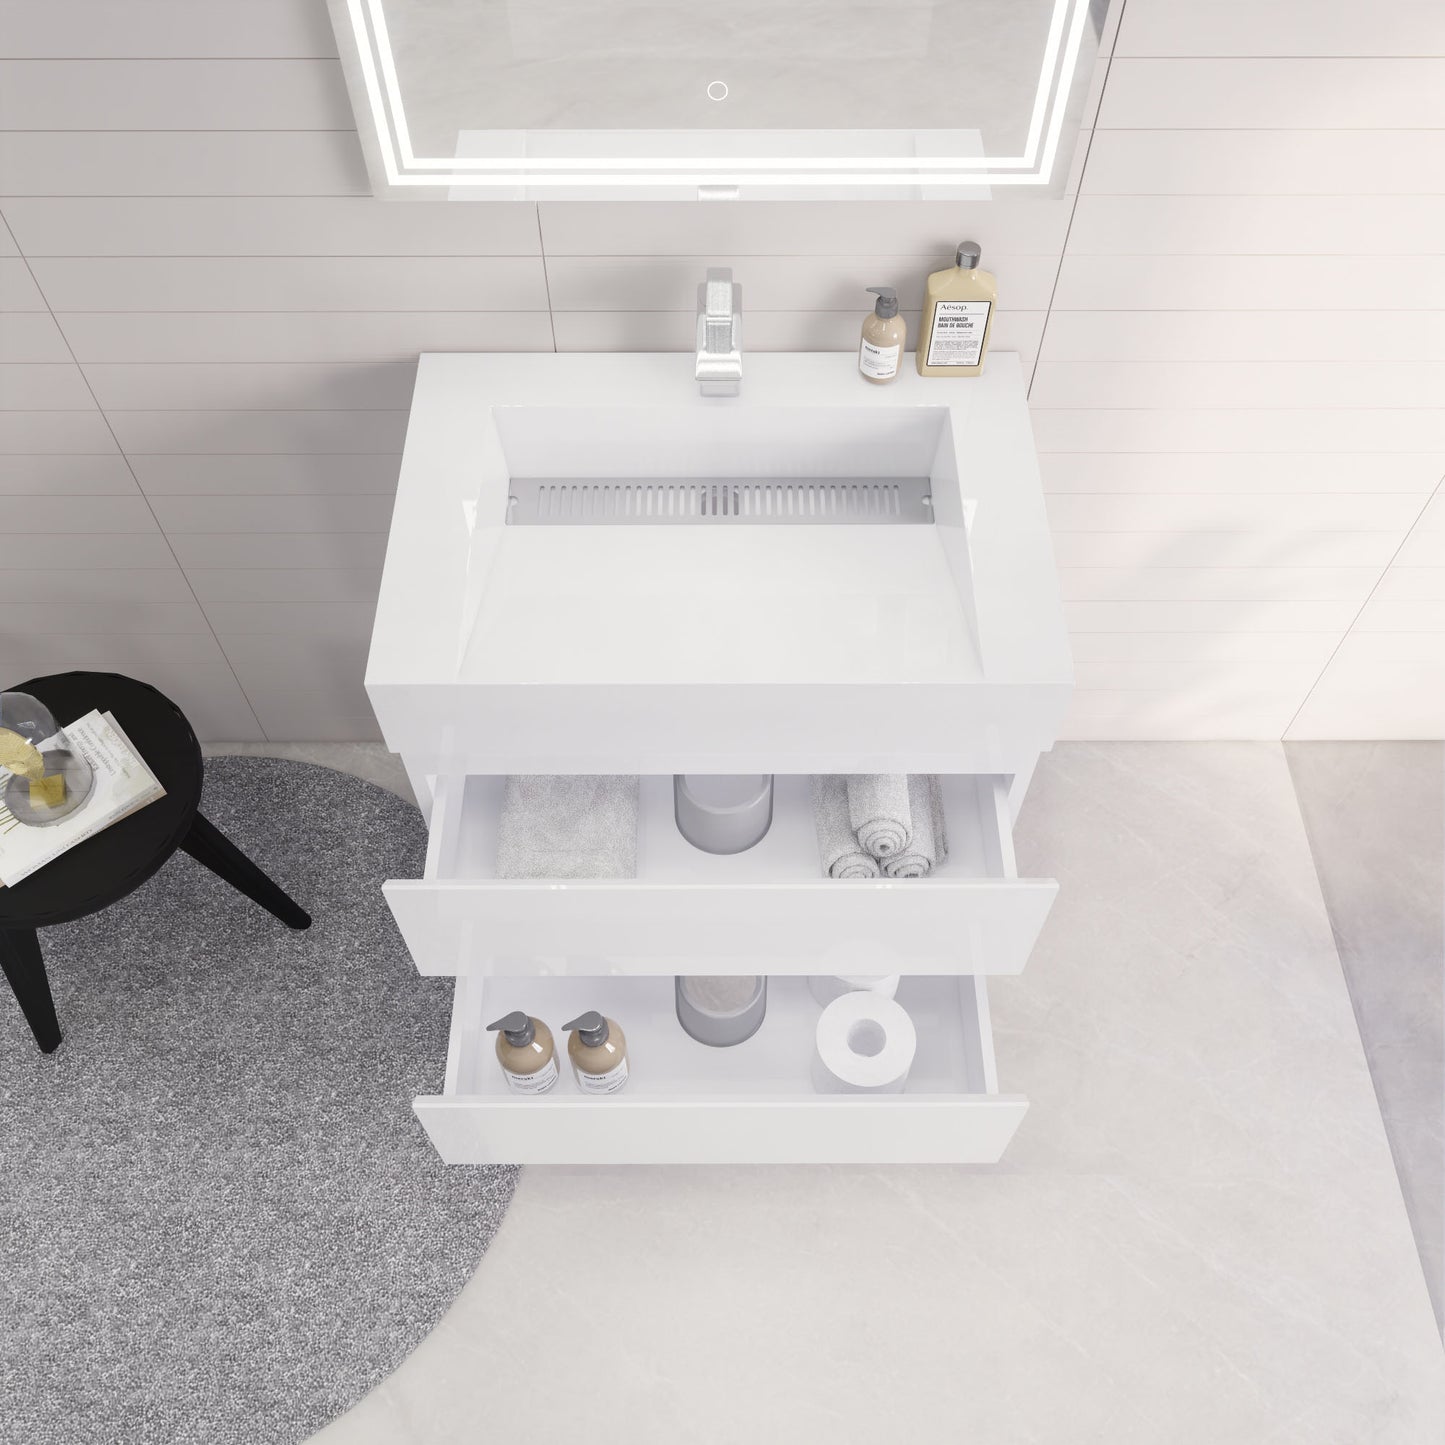 Monterey 30" Wall Mounted Bathroom Vanity with Reinforced Acrylic Sink